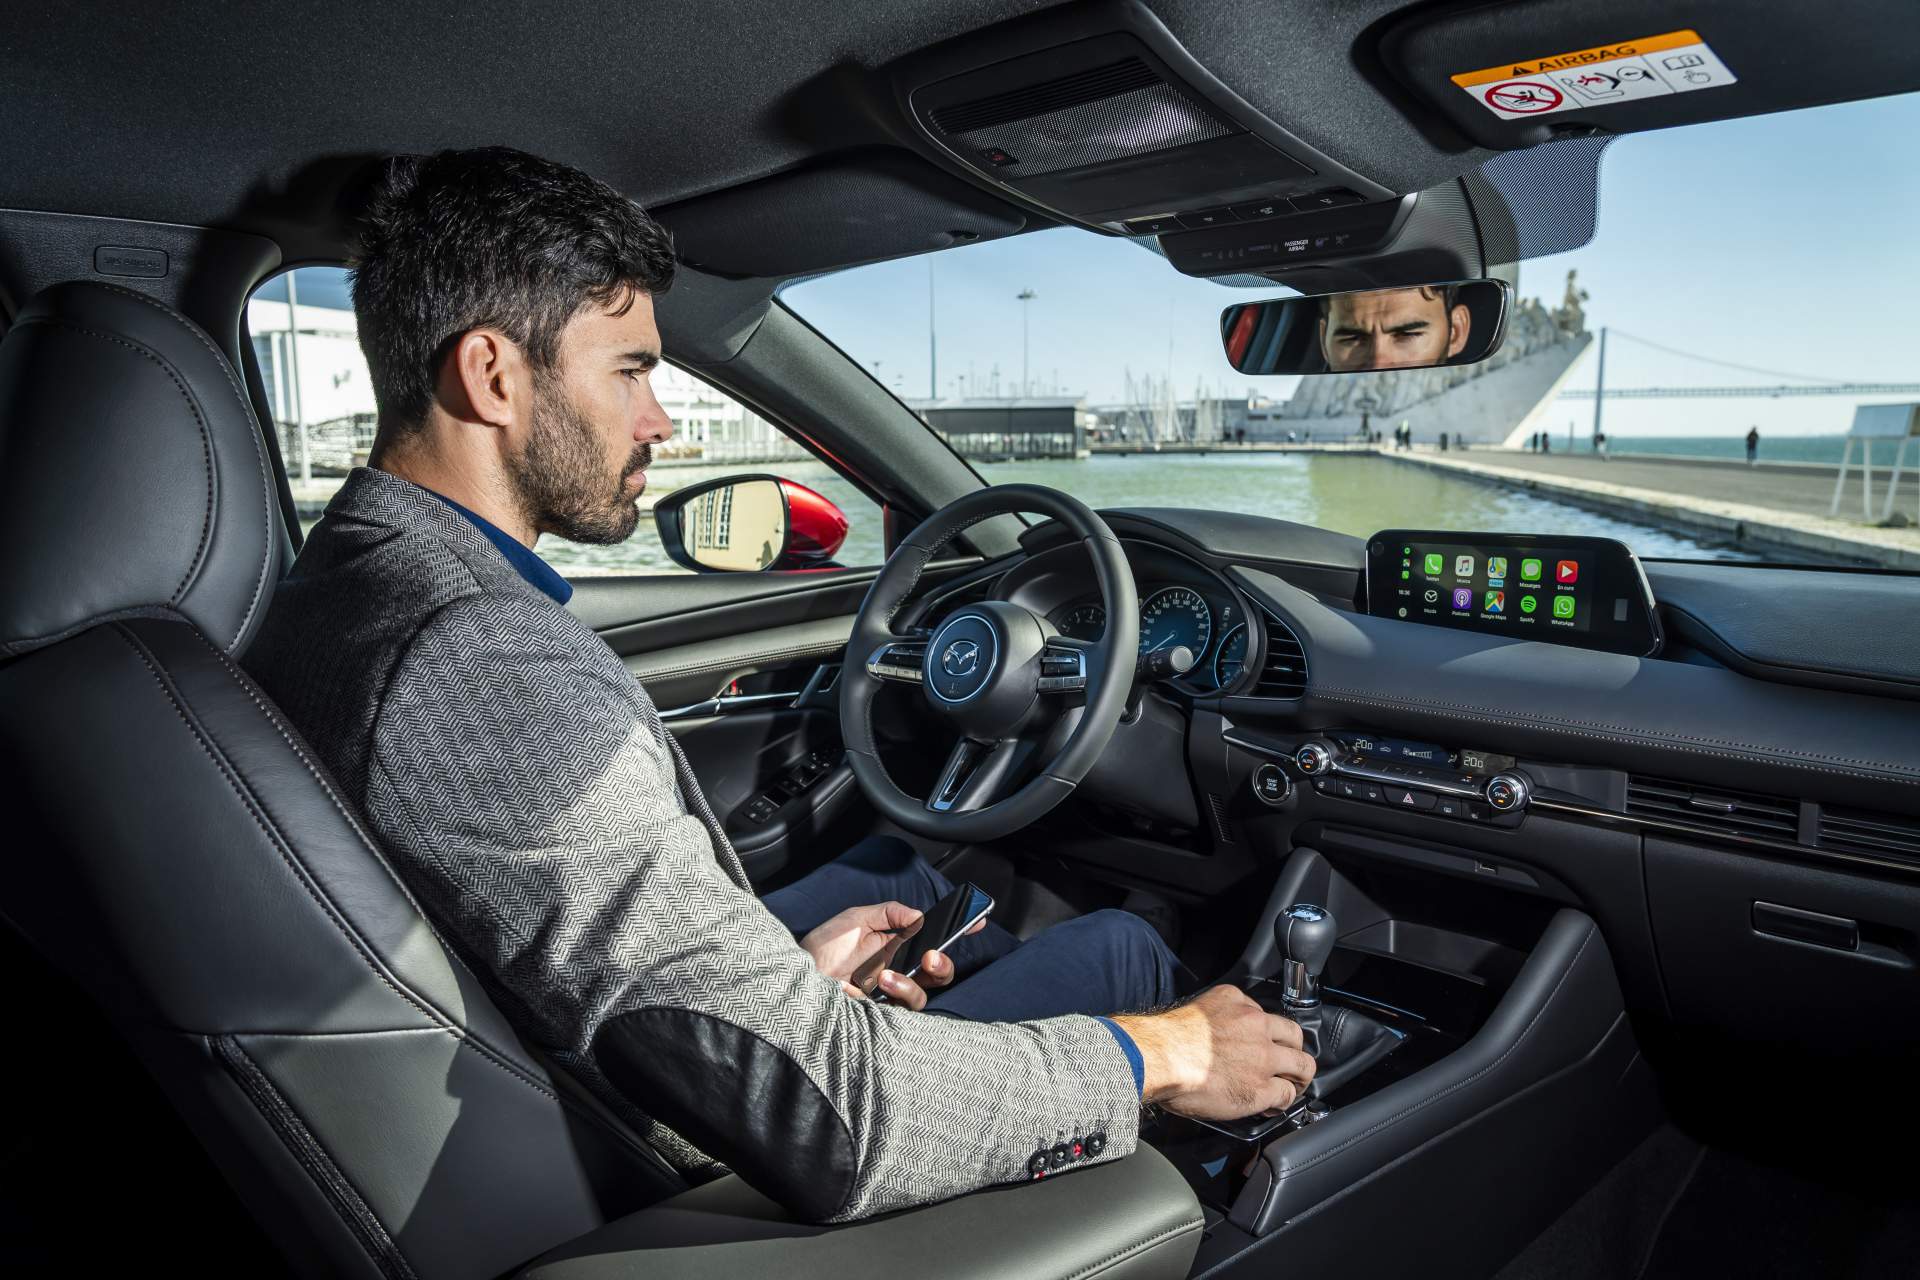 Euro-Spec 2019 Mazda3 Detailed in Massive Photo Gallery - autoevolution